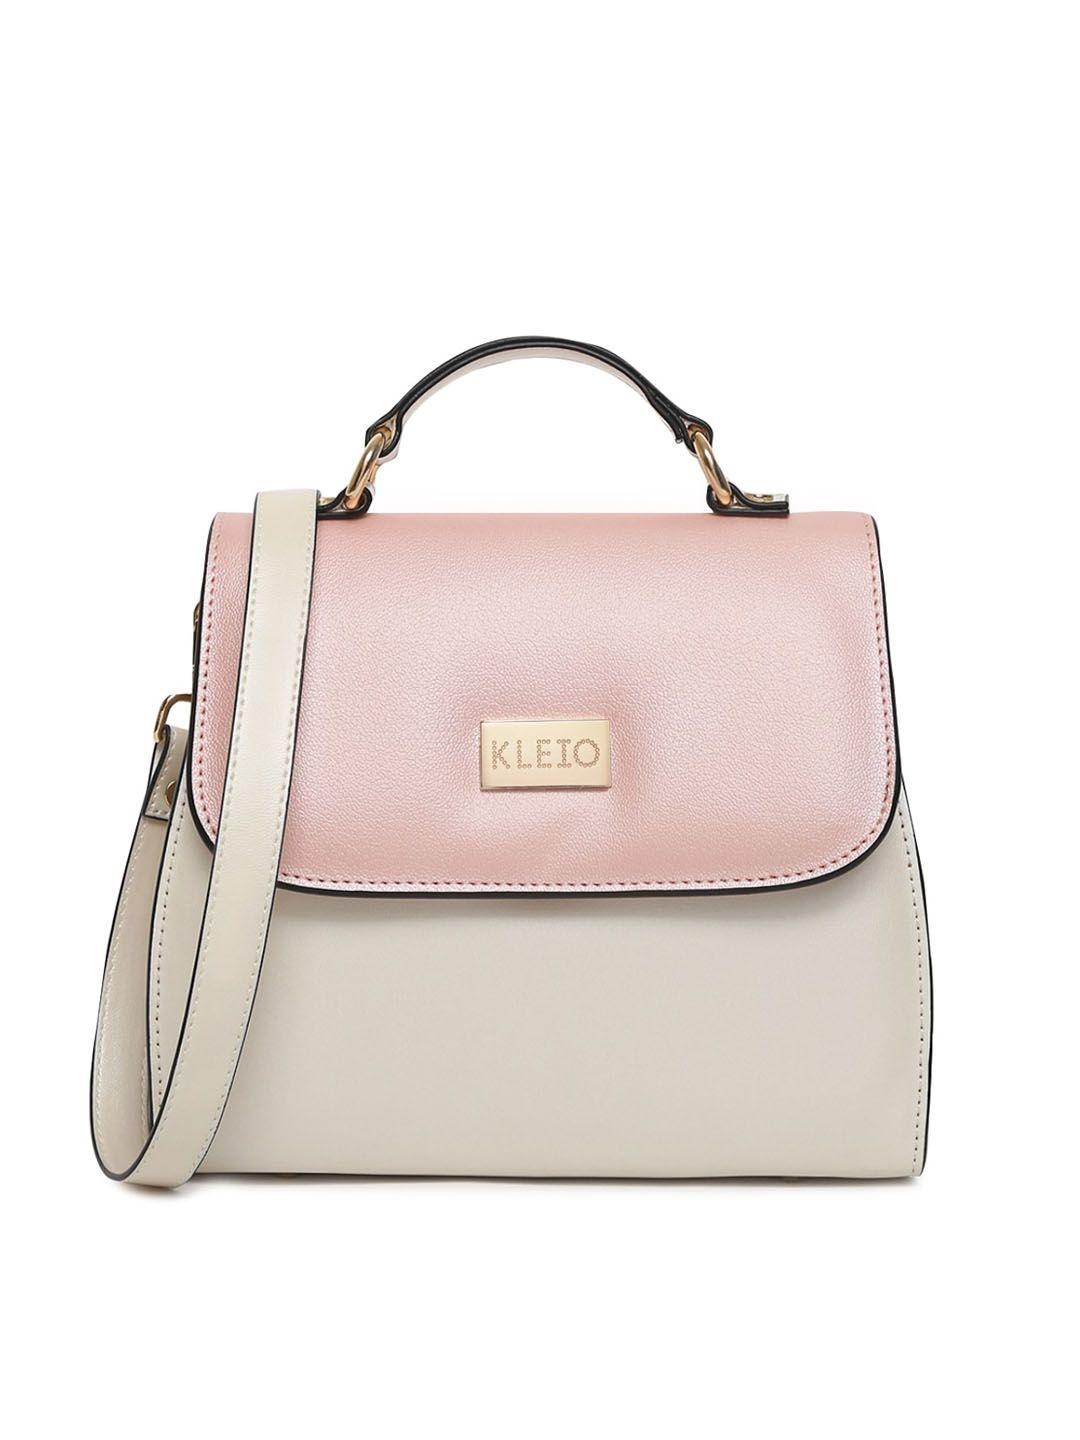 kleio pink structured satchel